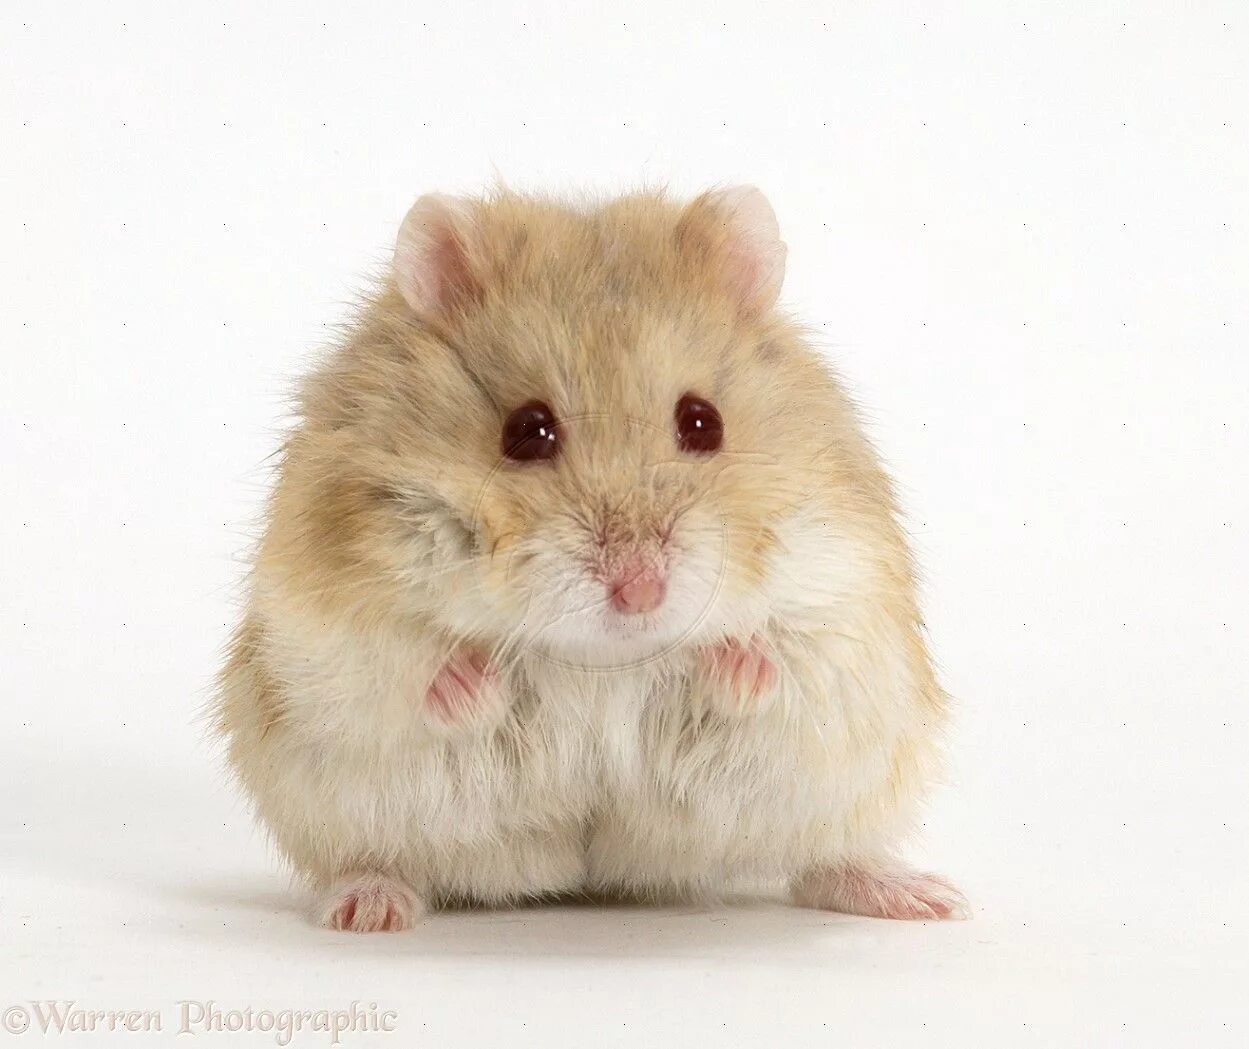 Sad hamster violin hamster. Хомяк джунгарский. Хомяк породы джунгарик. Сирийский хомяк и джунгарик. Карликовый хомяк джунгарский.